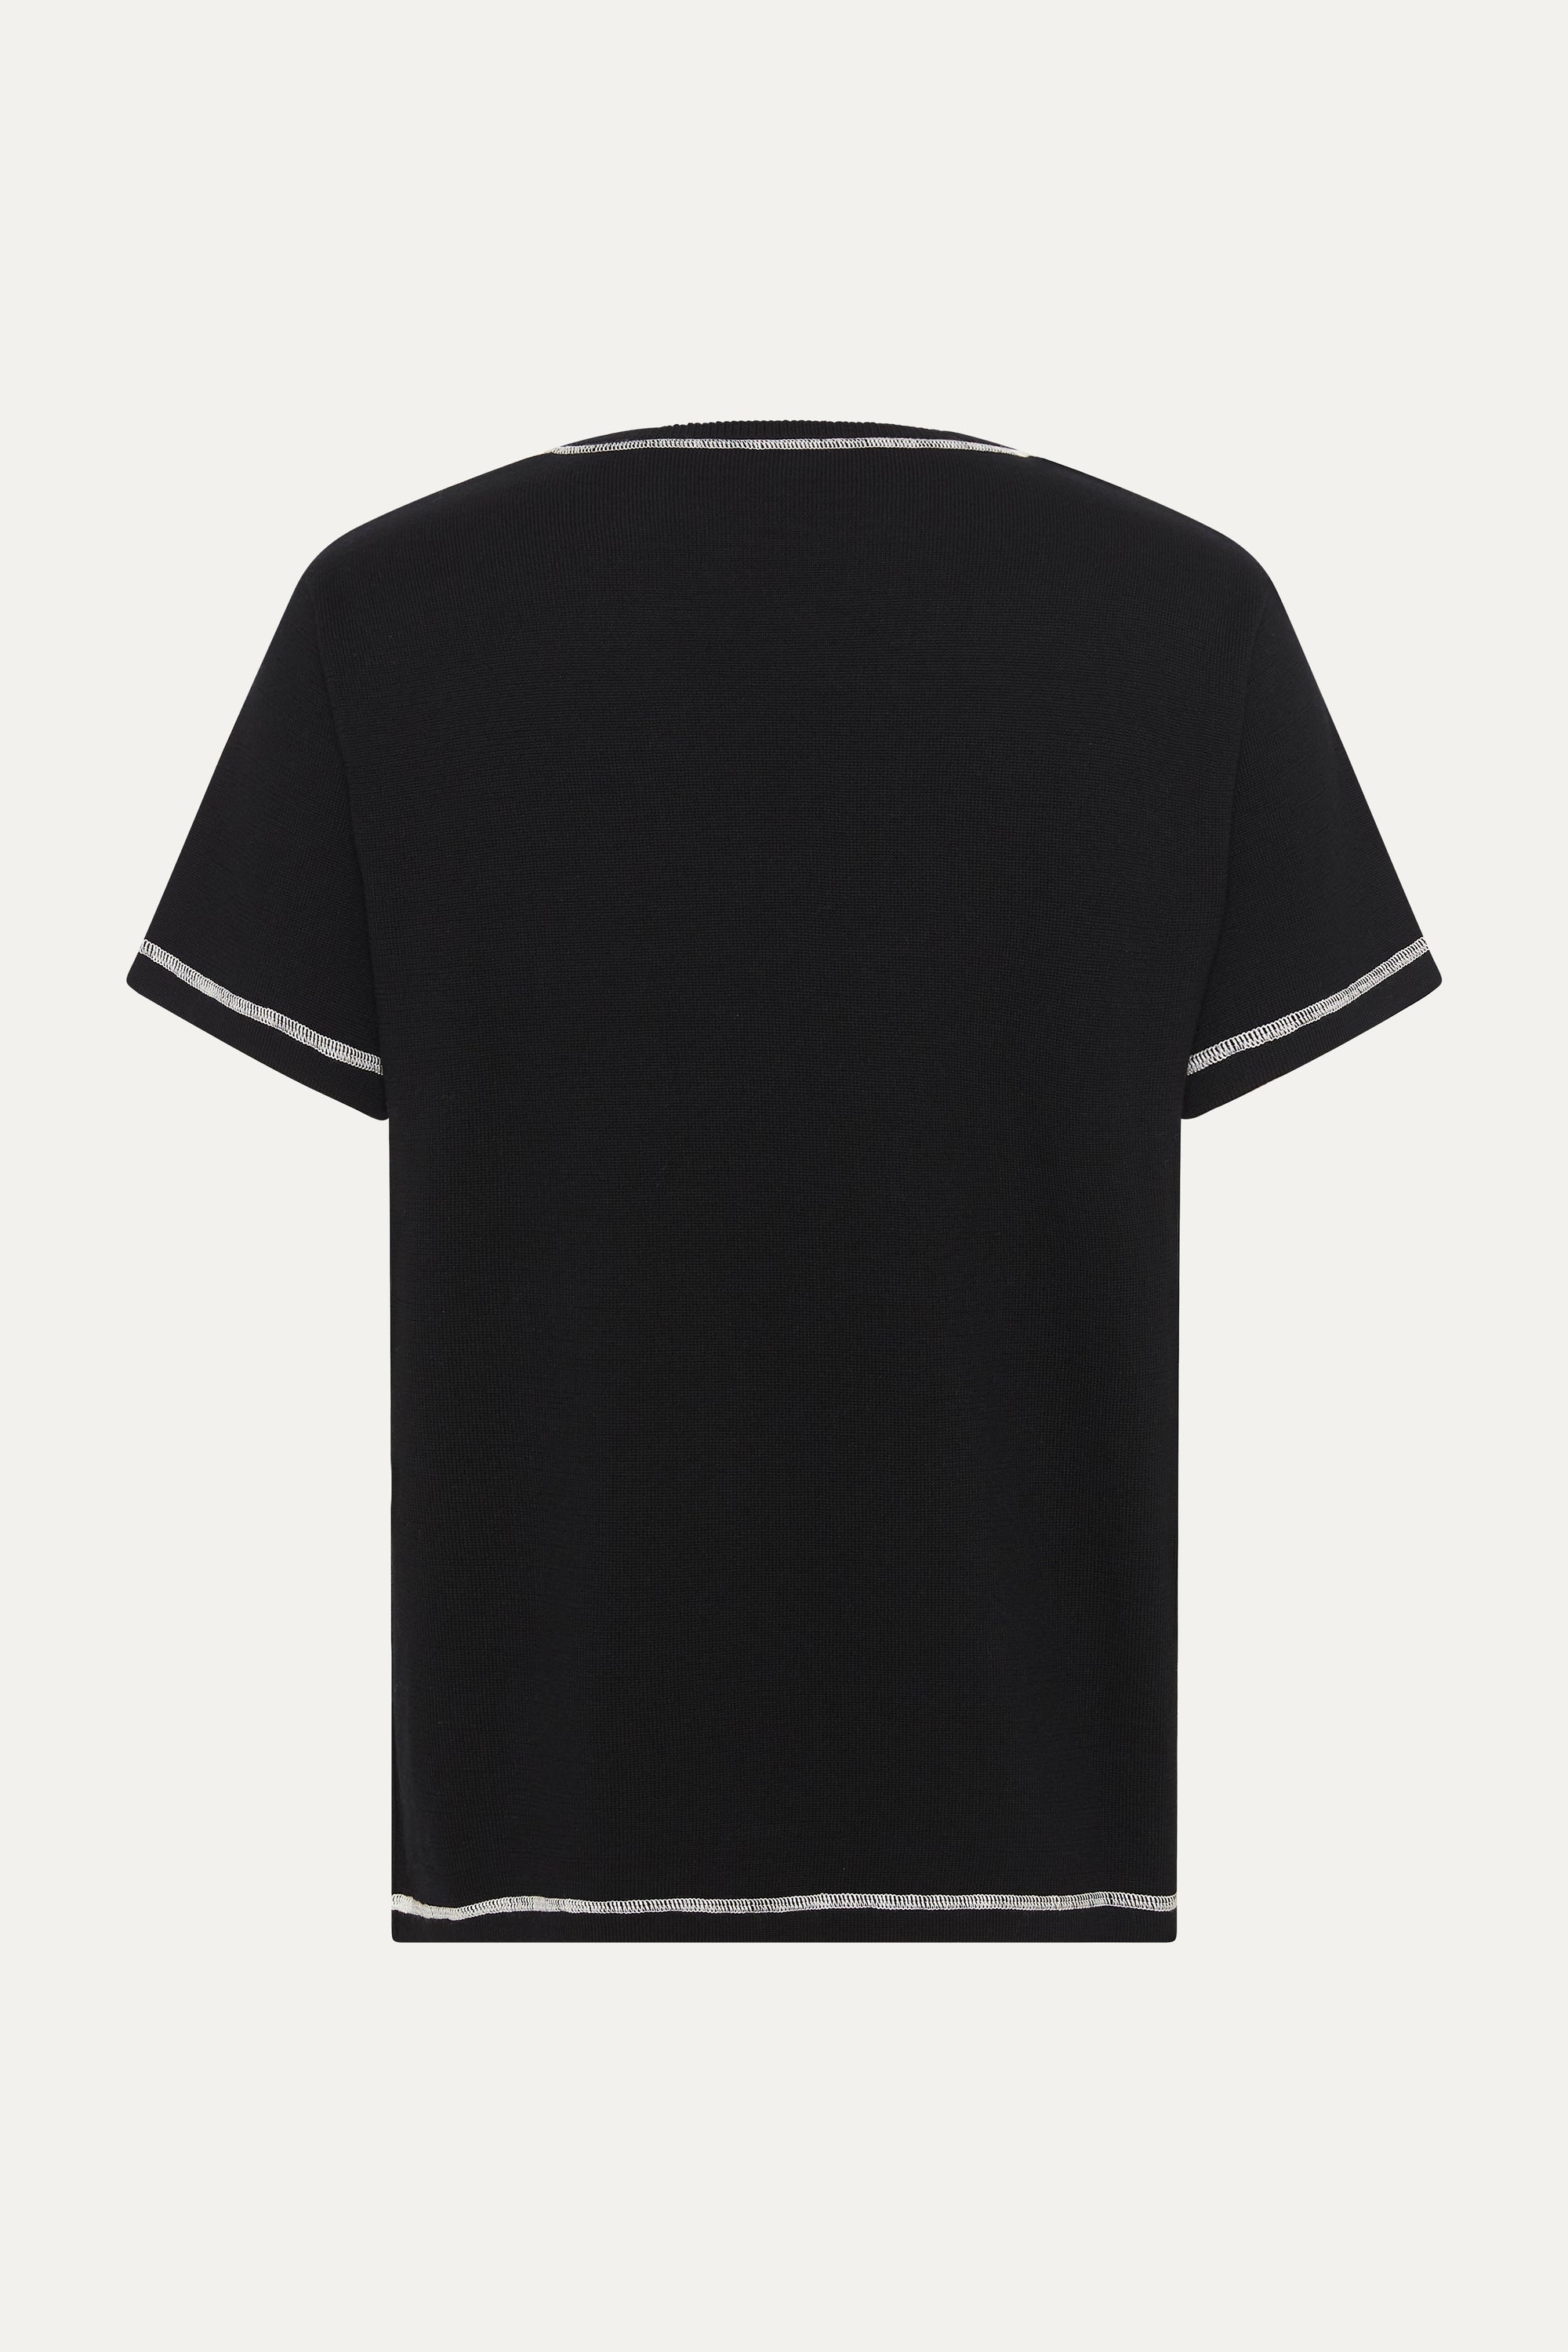 S/S T-Shirt In Midnight Black Merino Wool